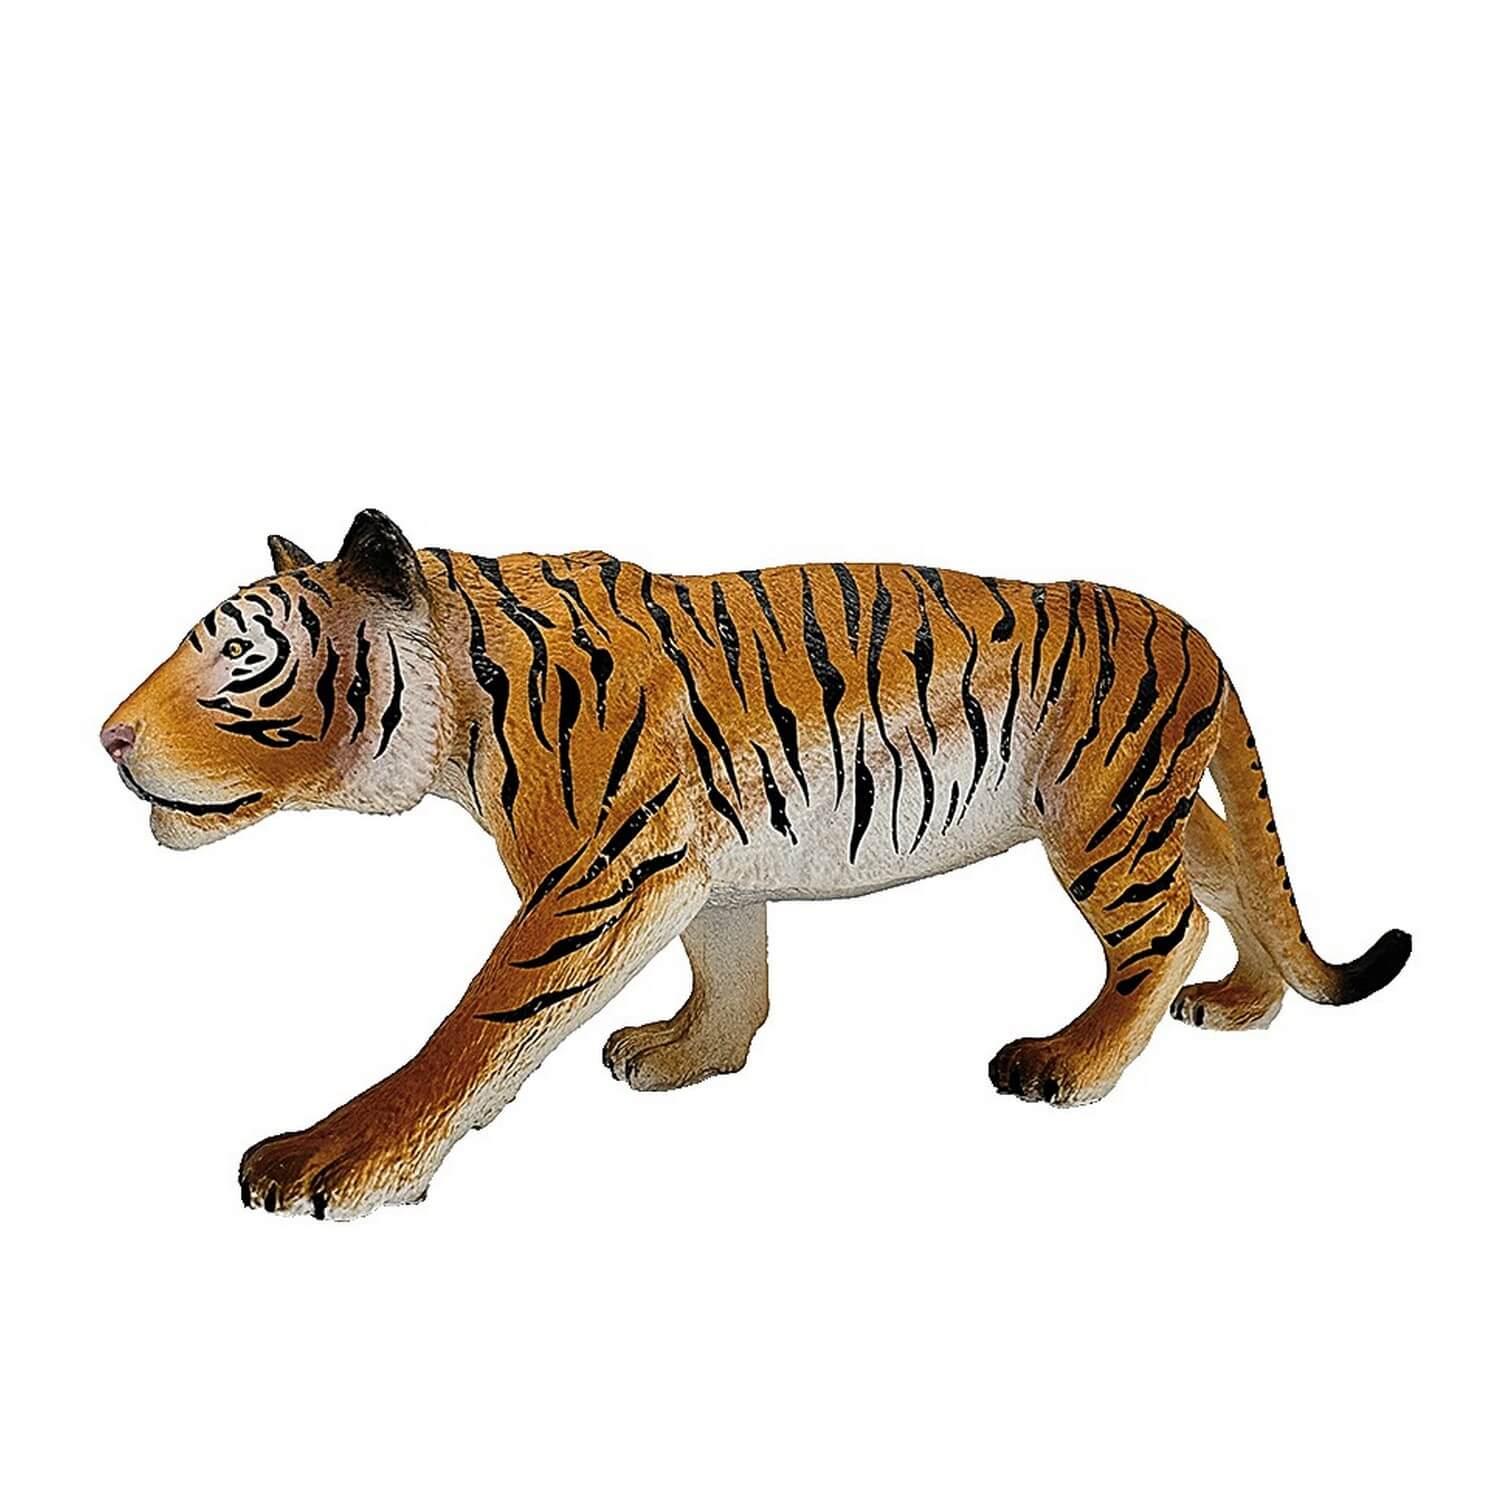 Figurine Tigre